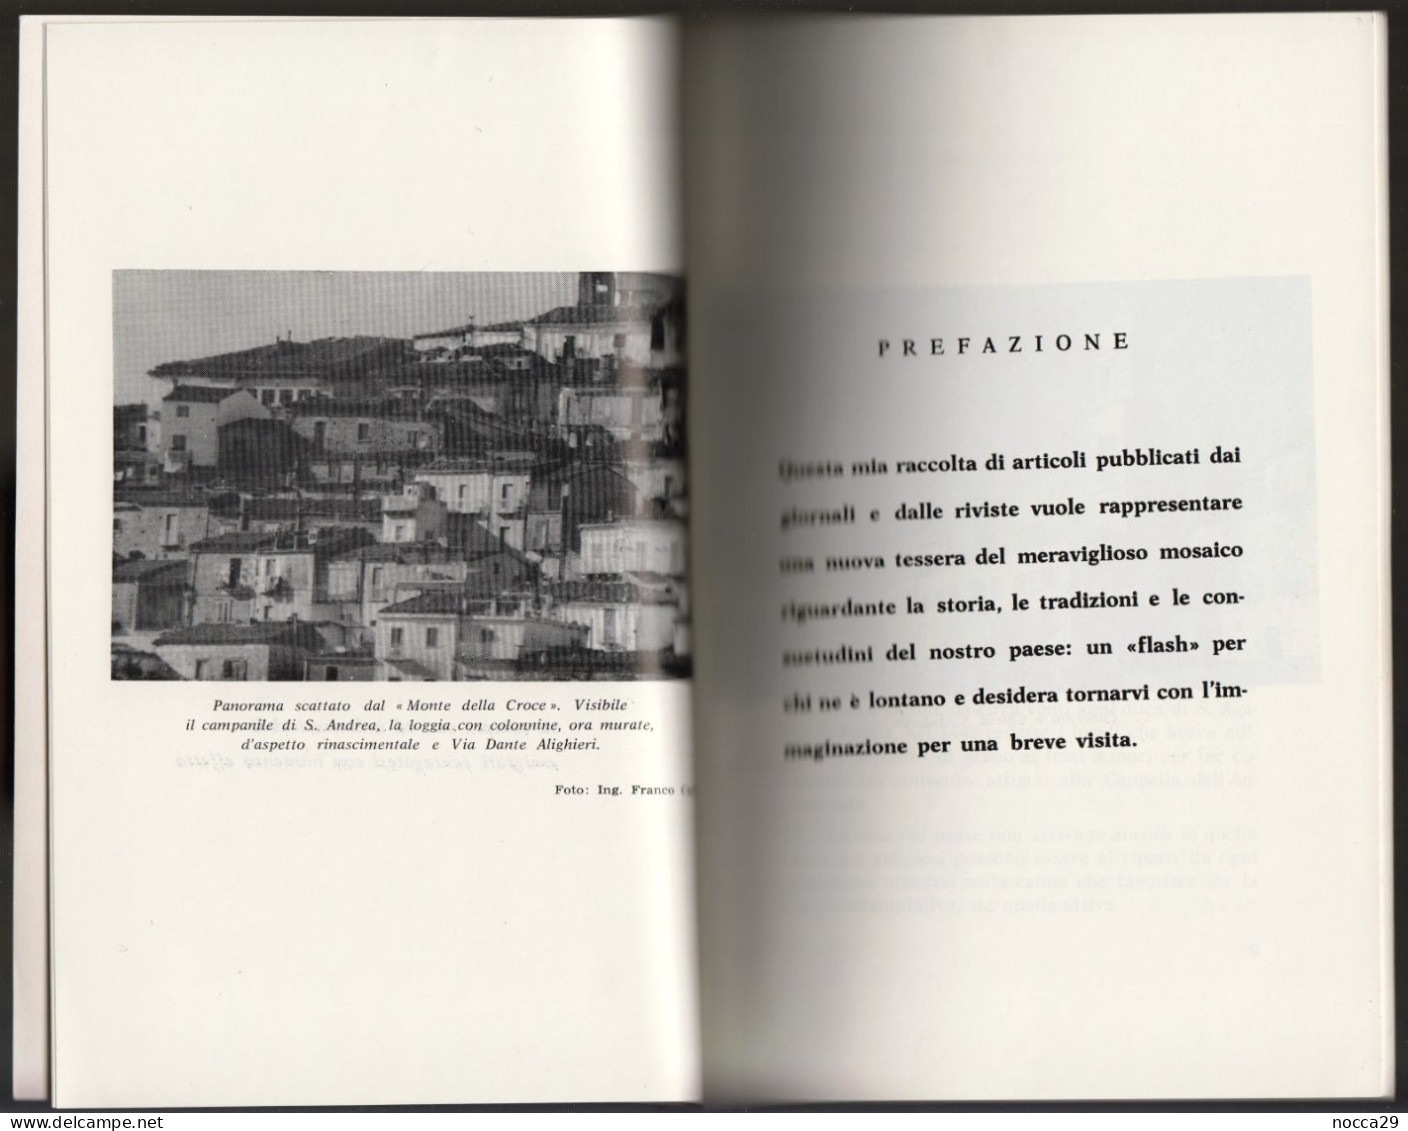 OPUSCOLO STAMPATO NEL 1986 - ISTITUZIONI ED EMIGRATI DI S.AGATA DI PUGLIA  - AUTORE: MICHELE ANTONACCIO  (STAMP273) - Tourisme, Voyages